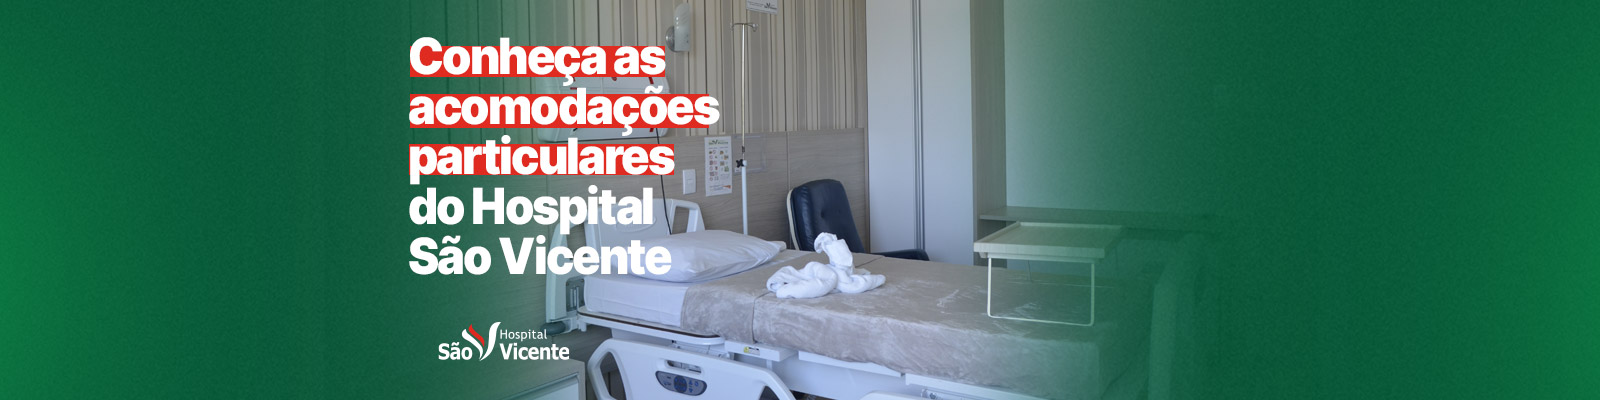 Conheça as acomodações particulares do Hospital São Vicente